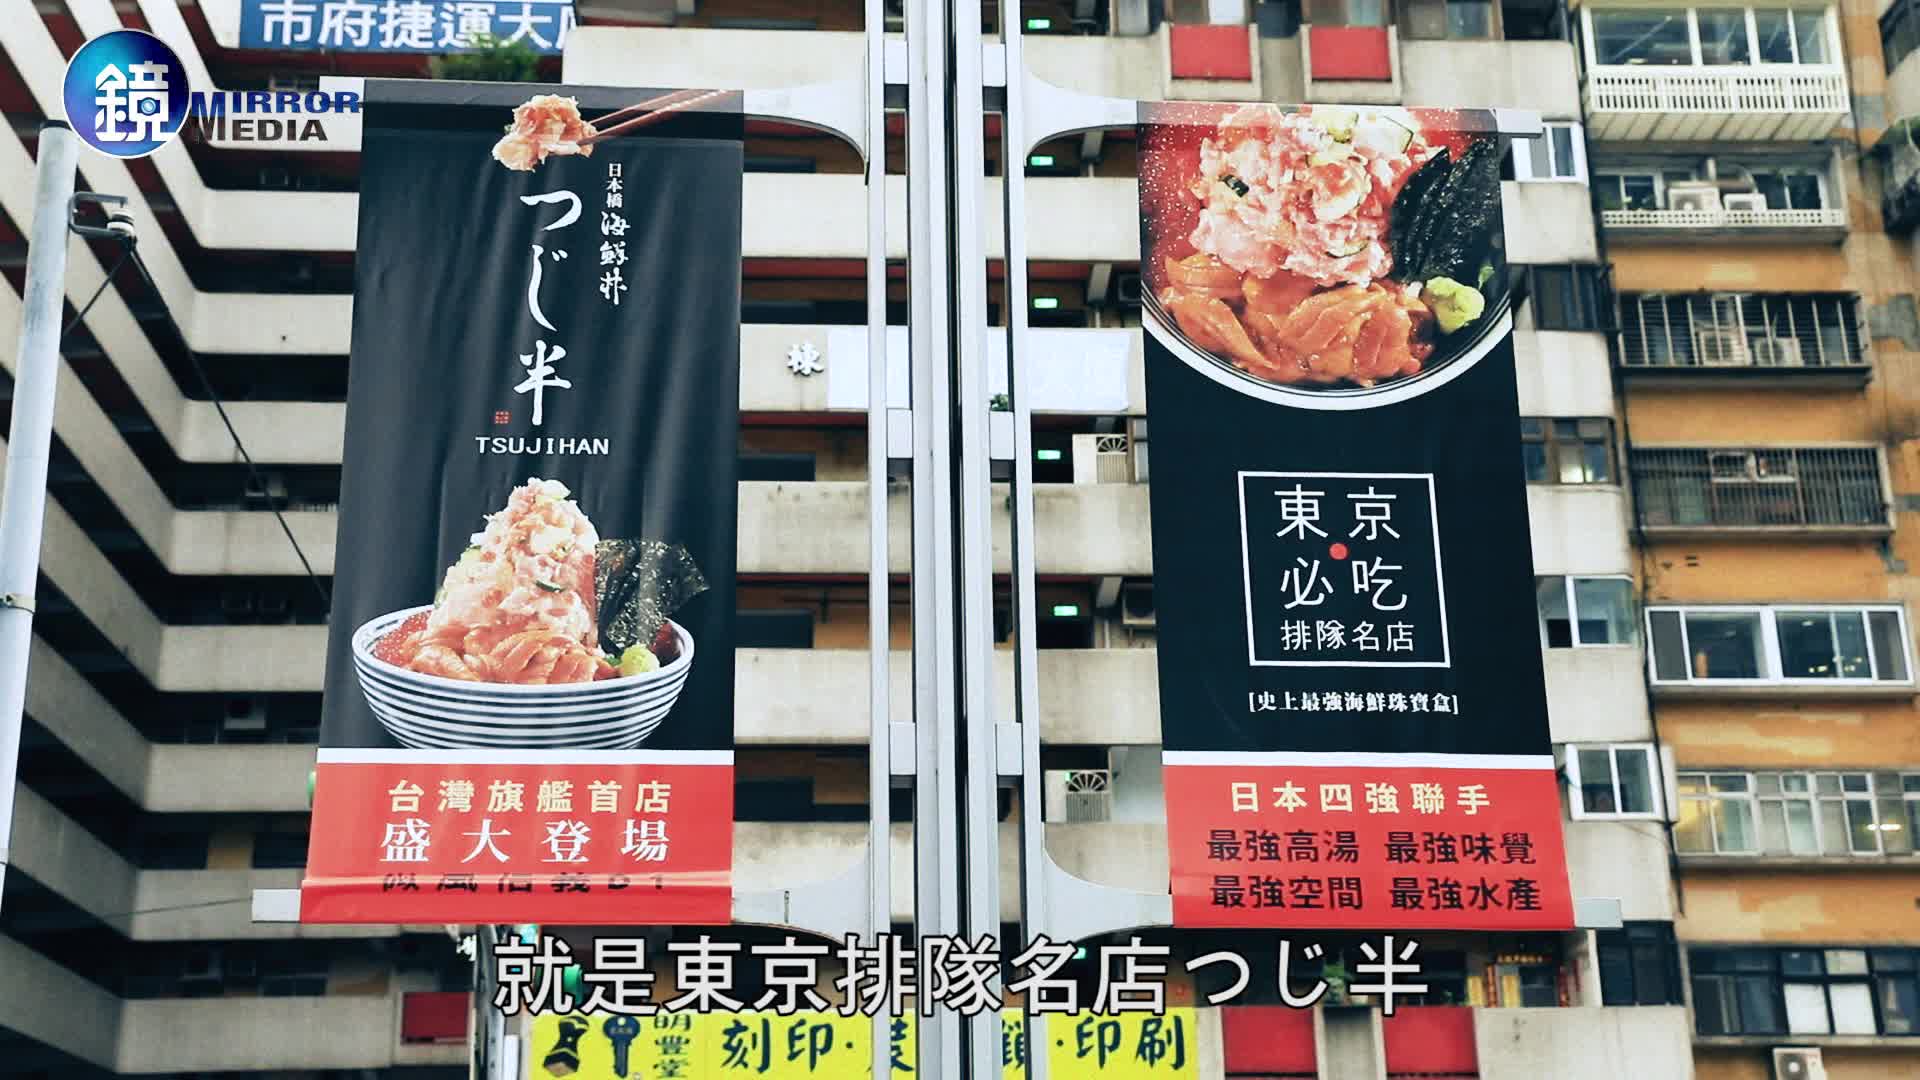 鏡食旅 日本第一海鮮丼來台七大賞析重點 Video